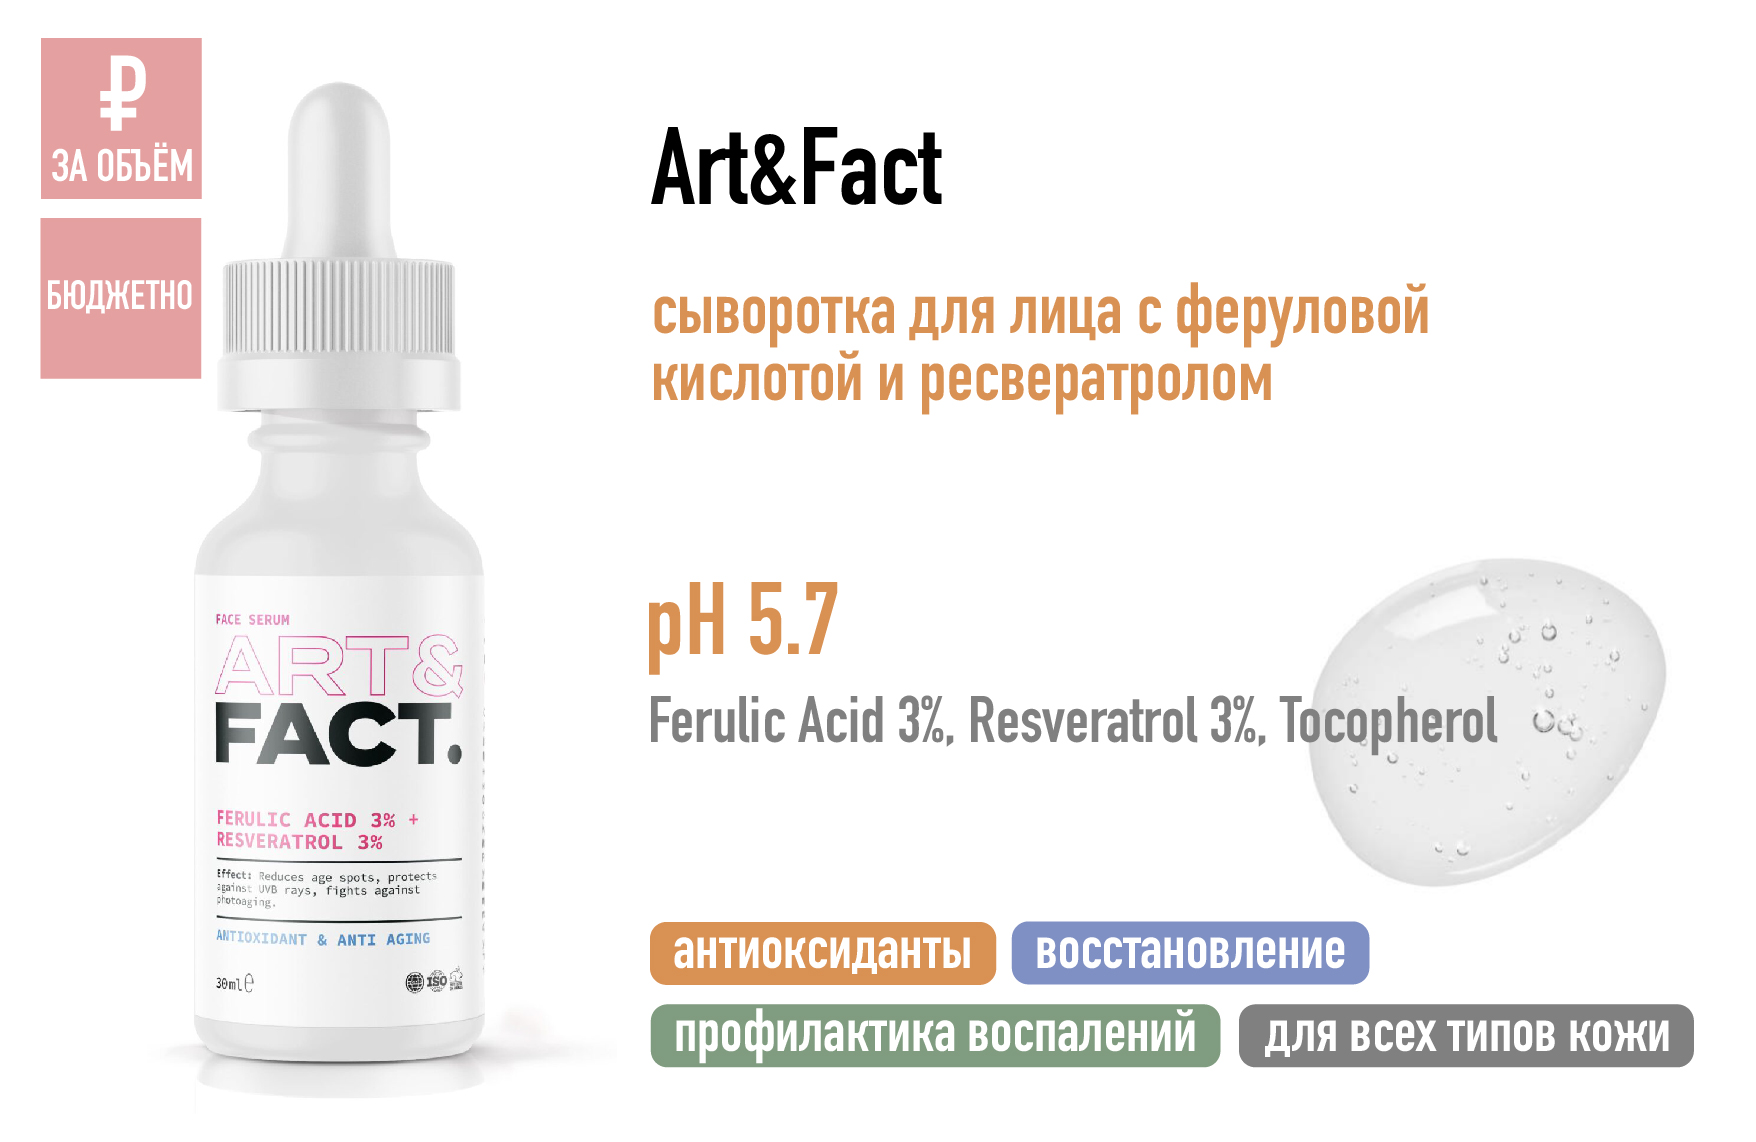 Art&Fact / Сыворотка для лица с феруловой кислотой 3% и ресвератролом 3%